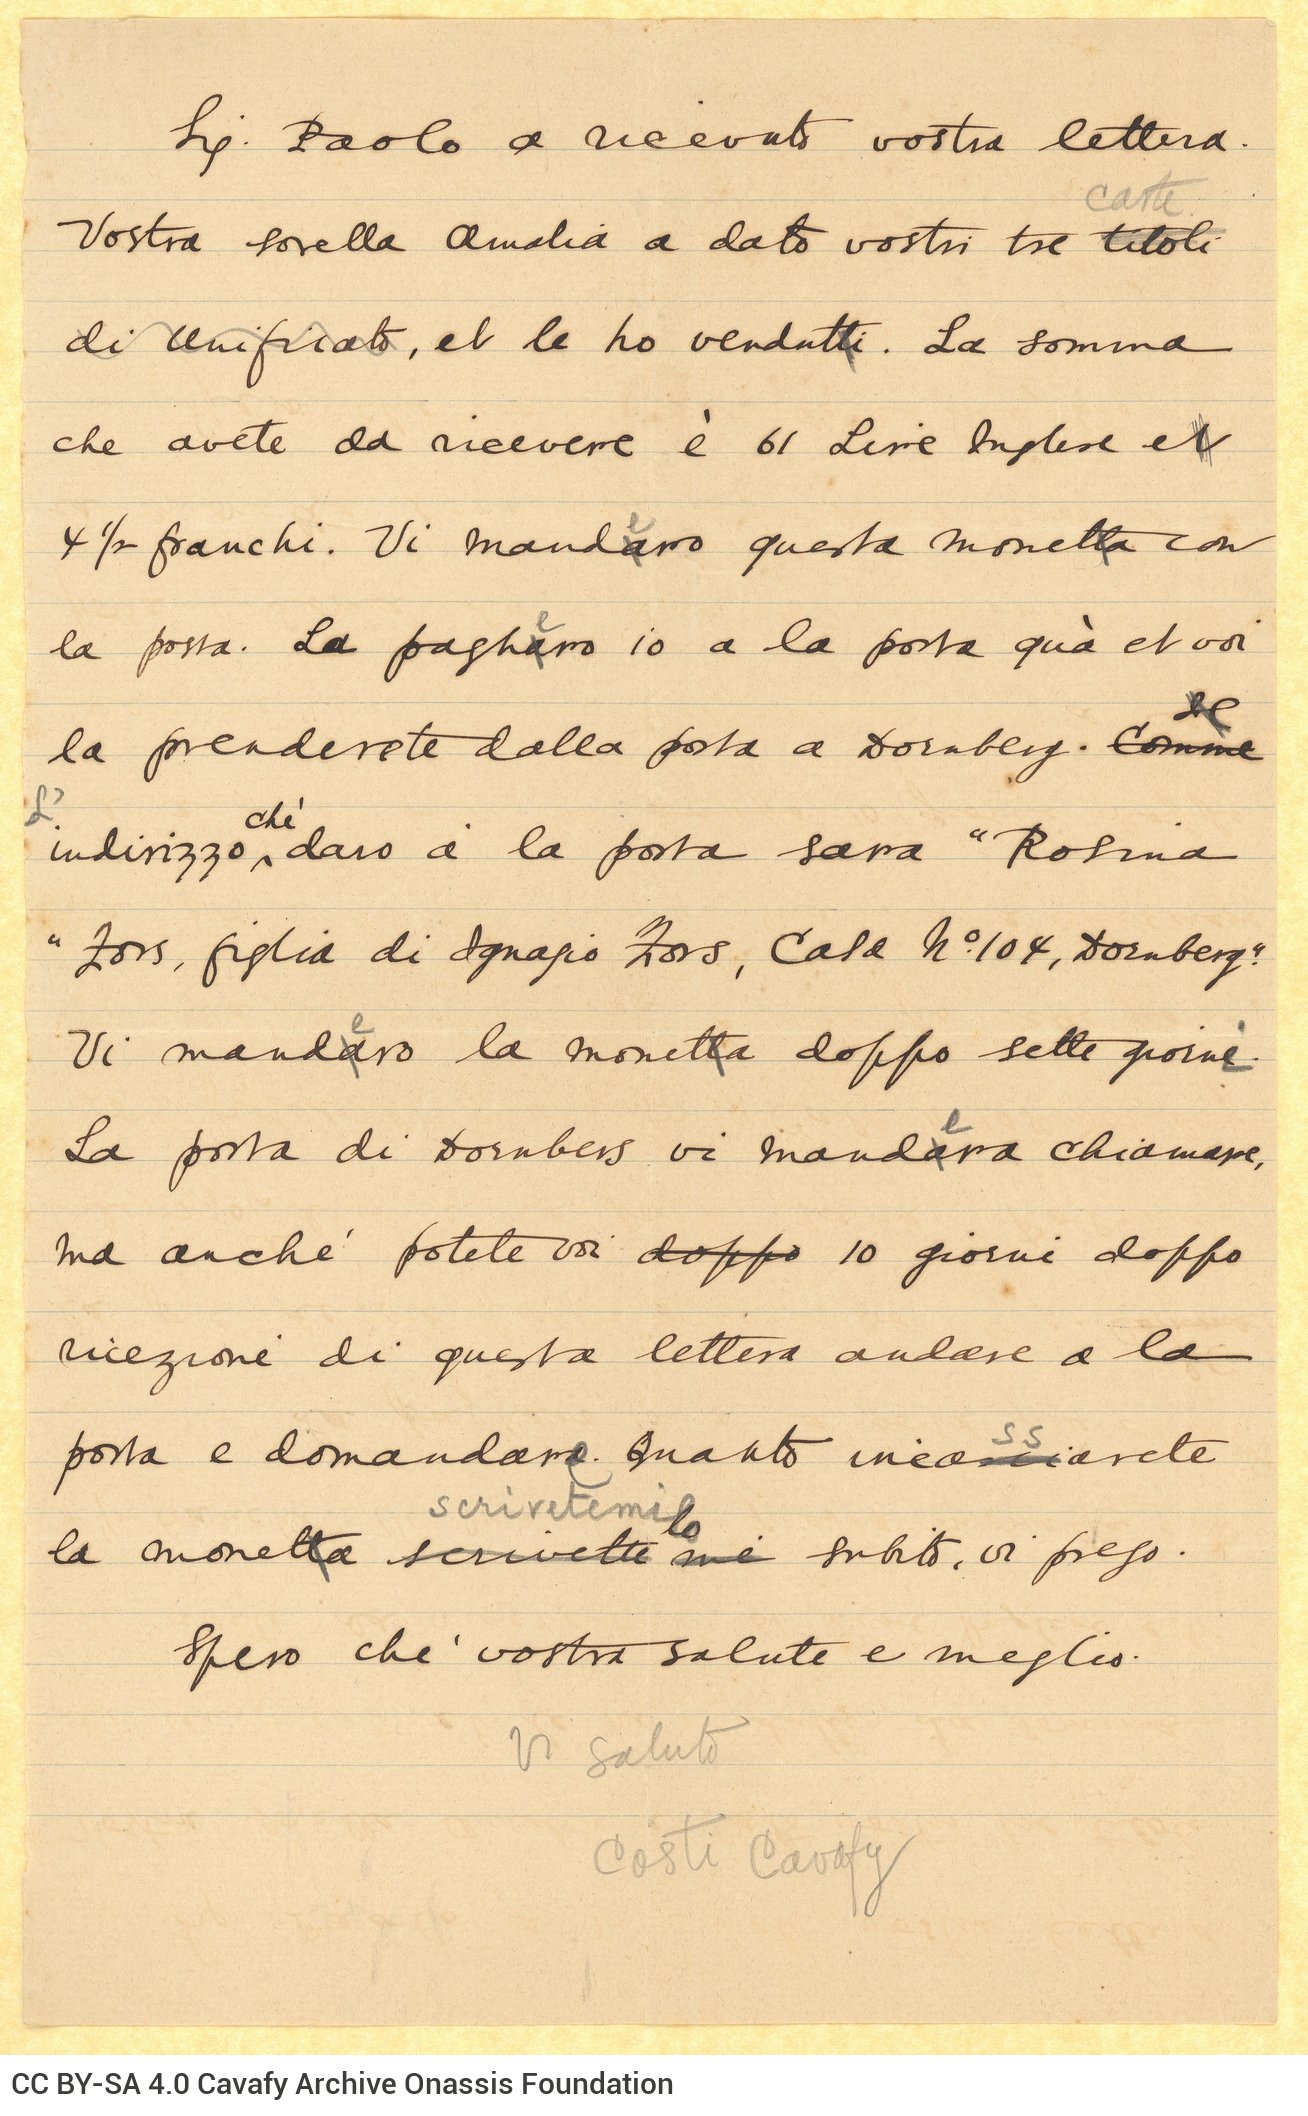 Χειρόγραφο σχέδιο επιστολής του Καβάφη προς τη Rosina Fors στη μία όψη δι�